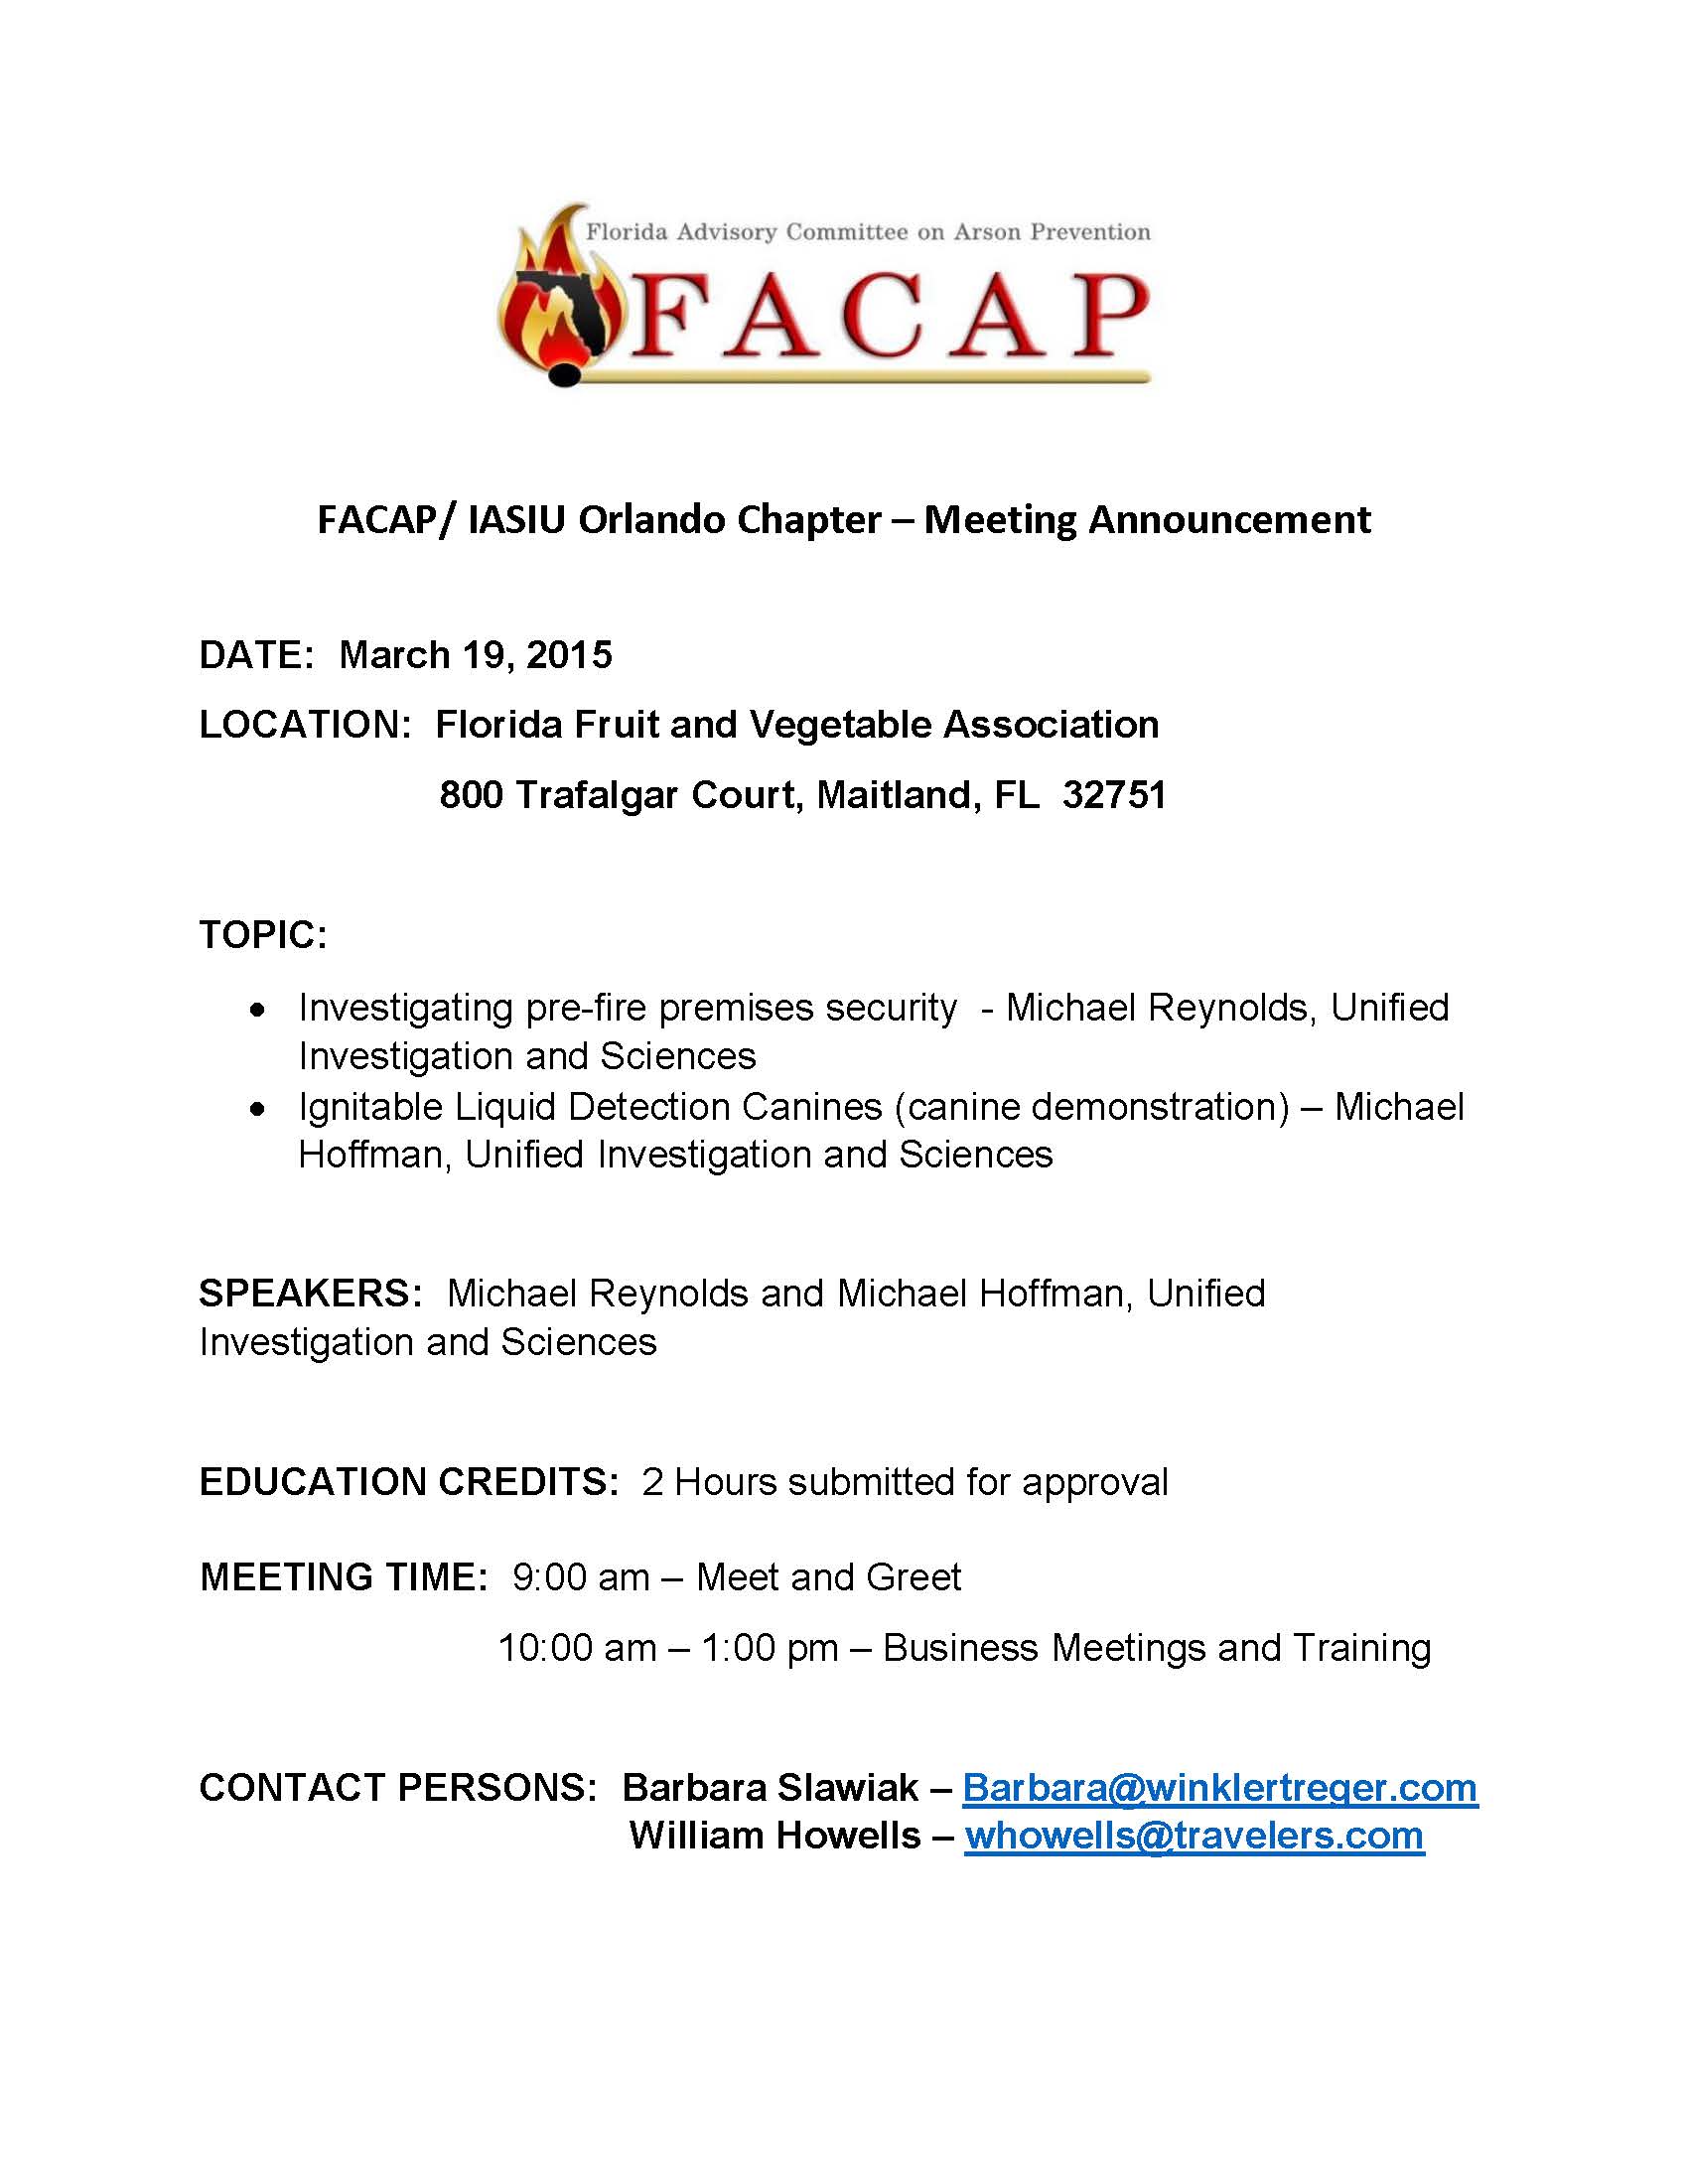 FACAP MEETING ANNOUNCEMENT - March  19 2015